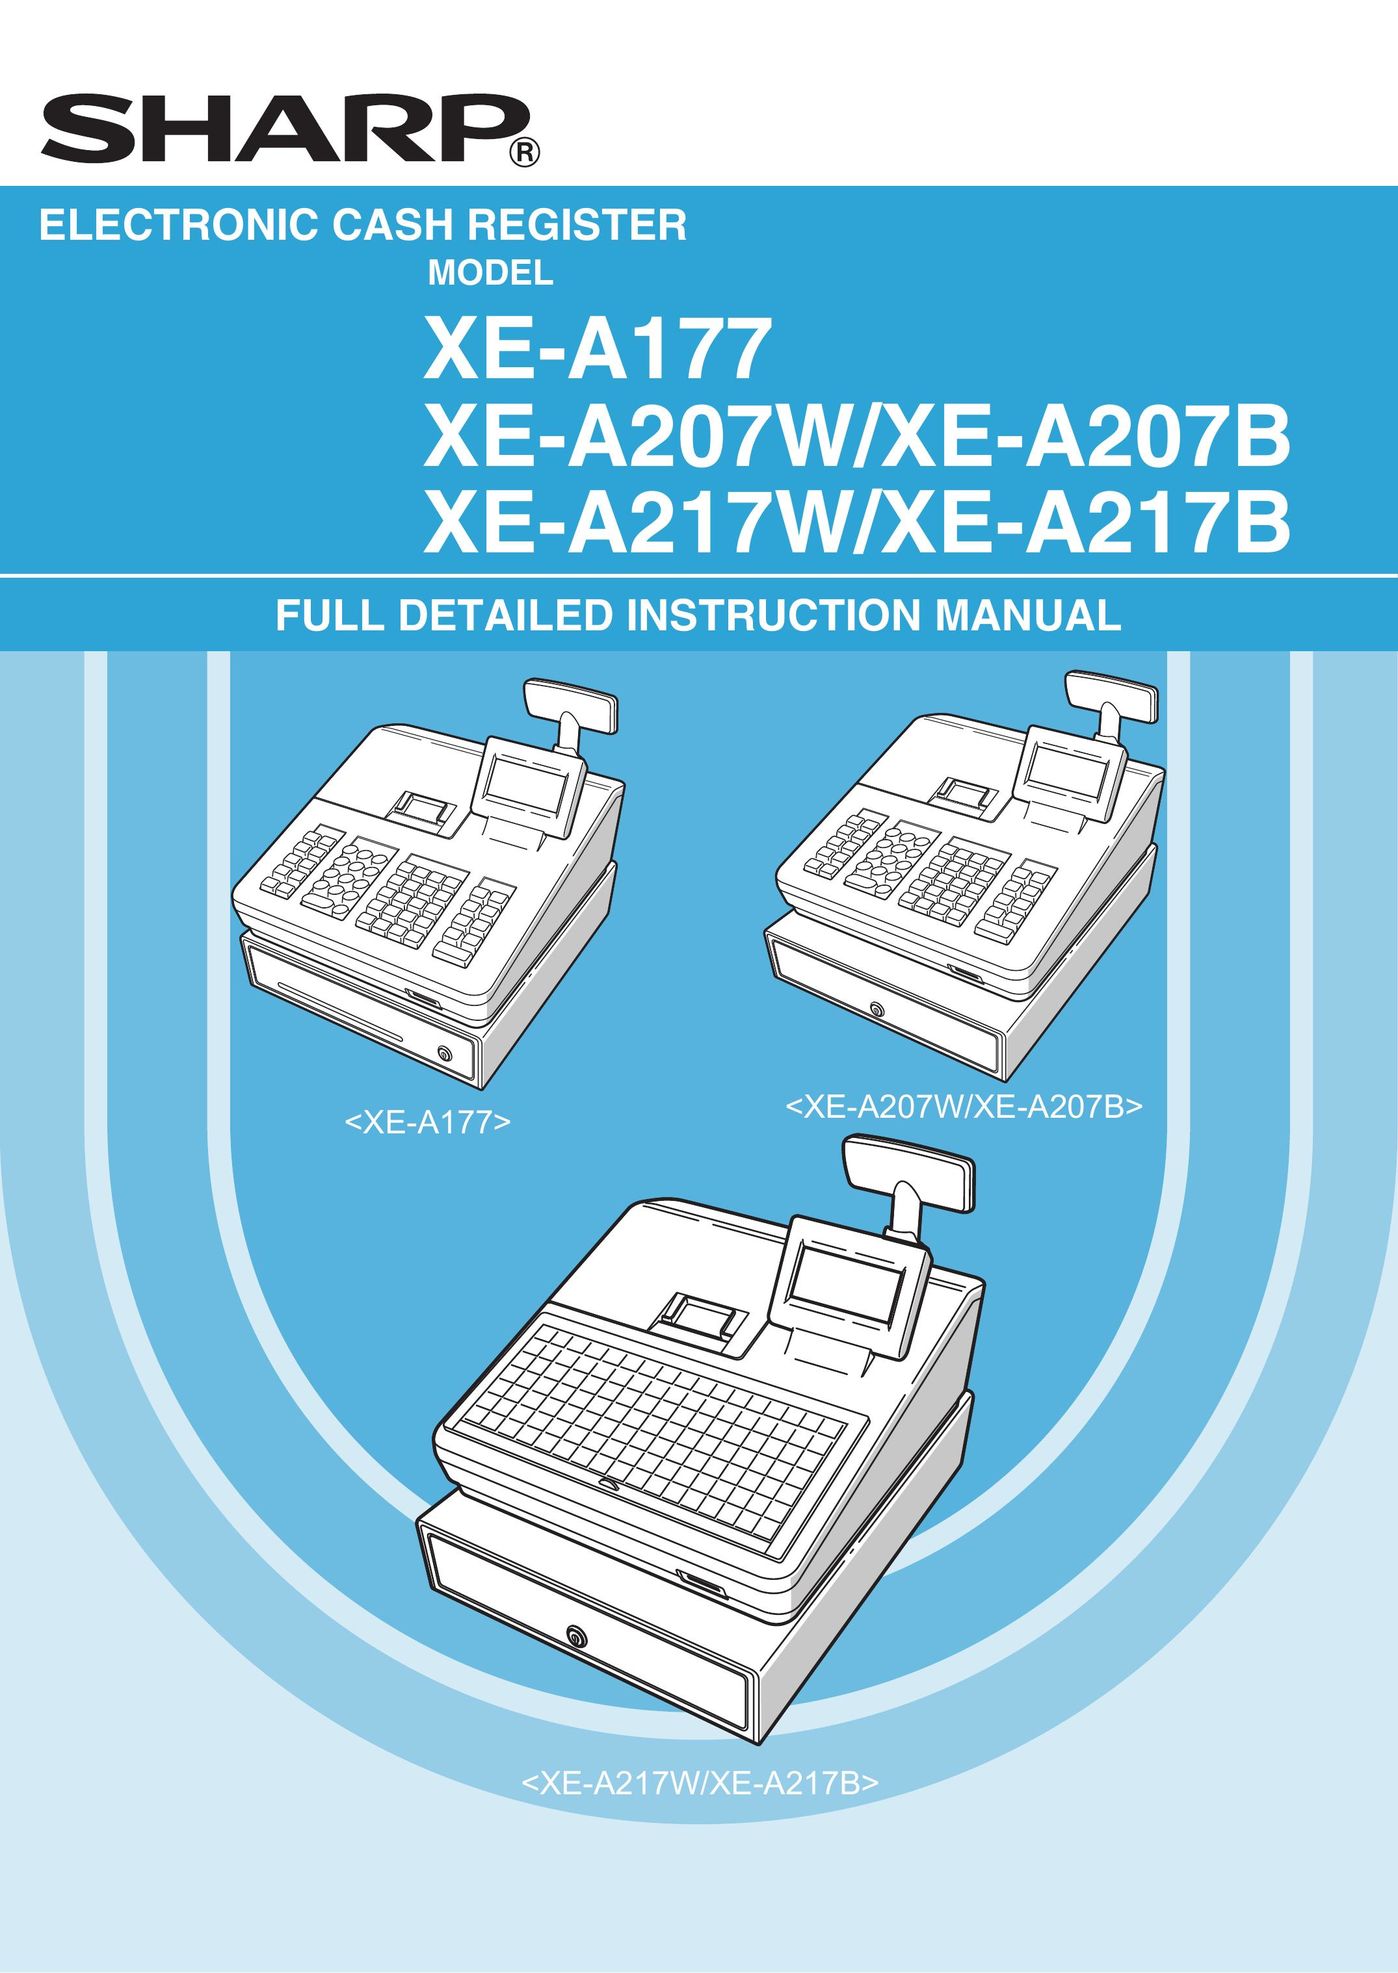 Sharp XE-A177 Cash Register User Manual